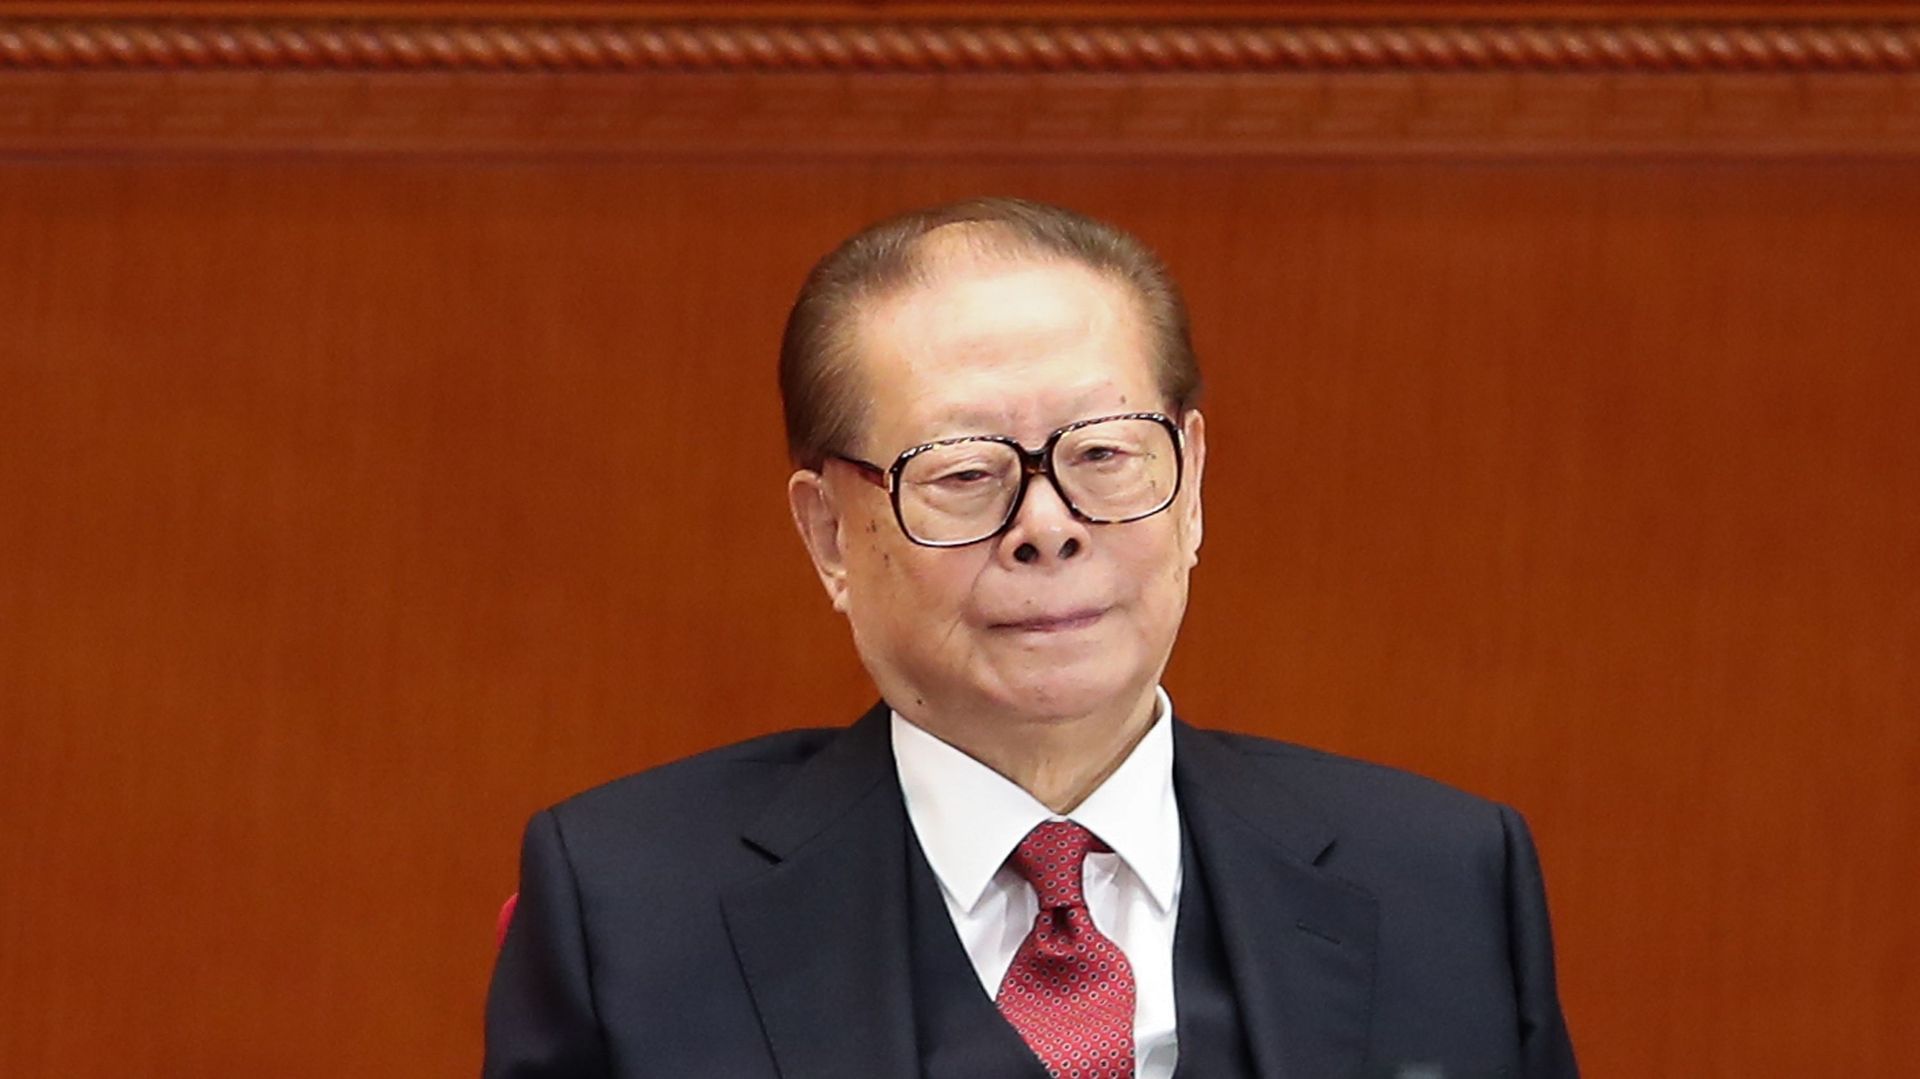 Le président Jiang Zemin en 2018, lors d’une session du Parti communiste.
